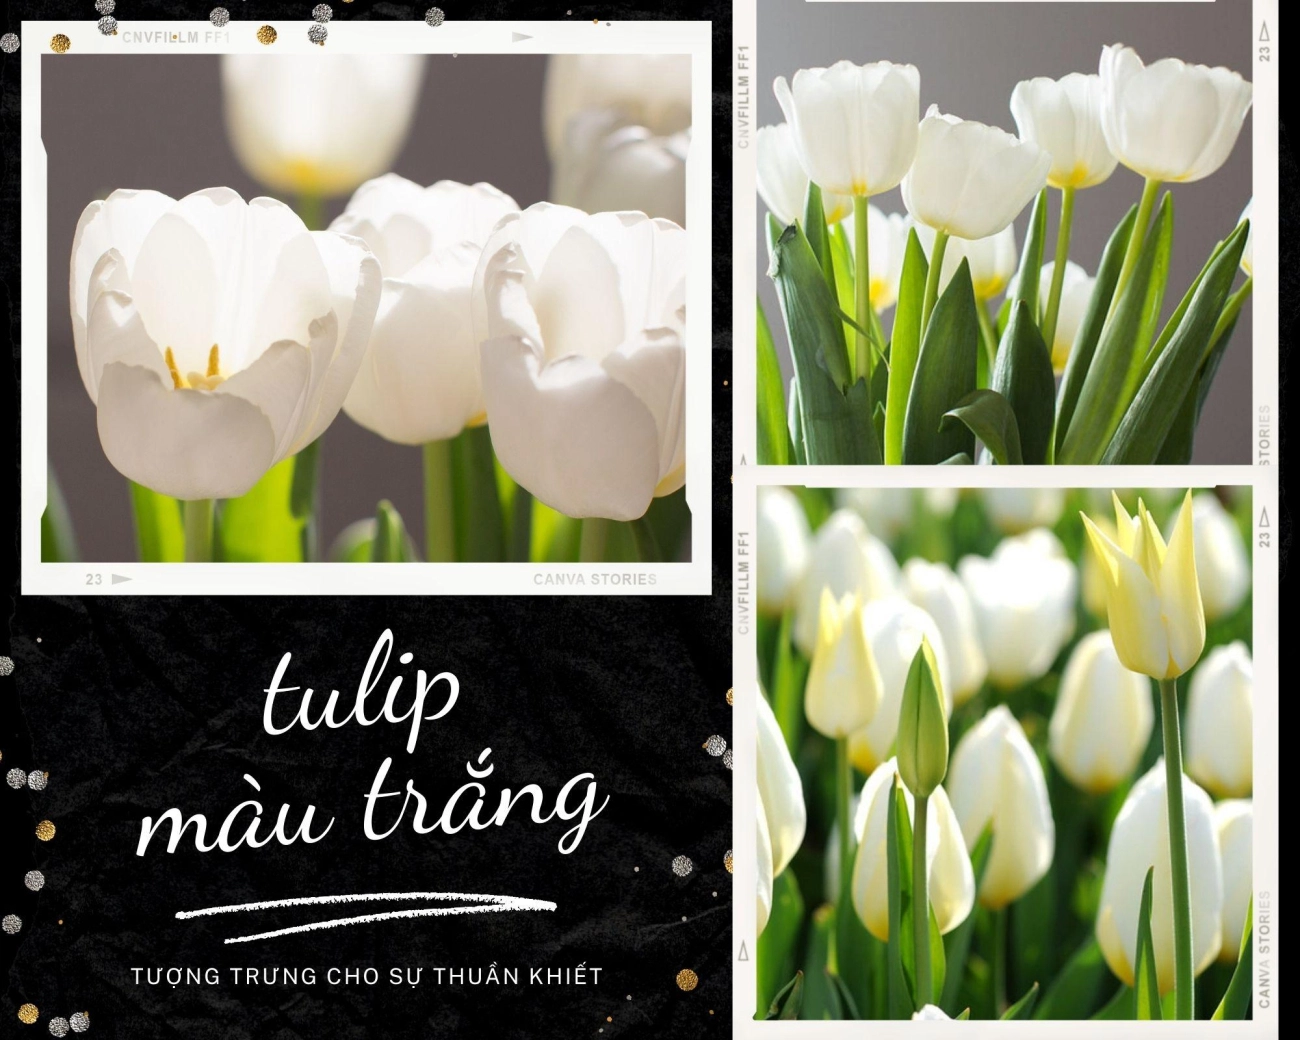 Hoa tulip - nguồn gốc đặc điểm và ý nghĩa ẩn giấu đằng sau mỗi sắc hoa - 7